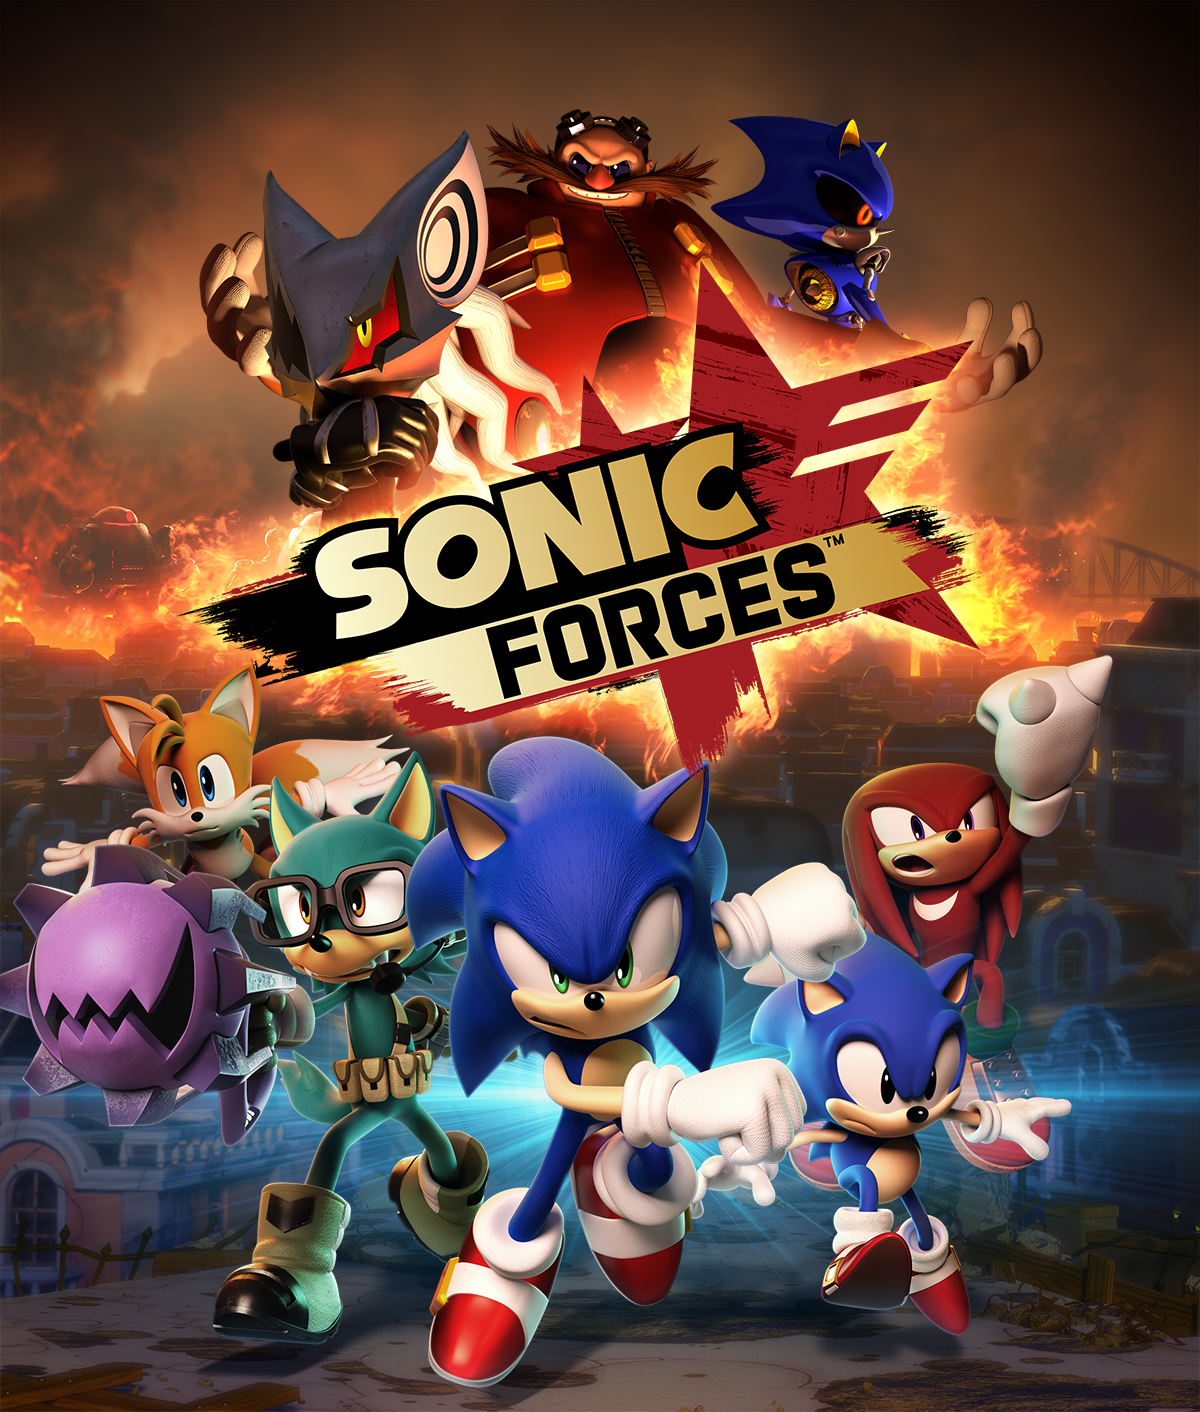 O jogo “Sonic Forces’ ganhou novo gameplay mostrando batalha inédita contra boss